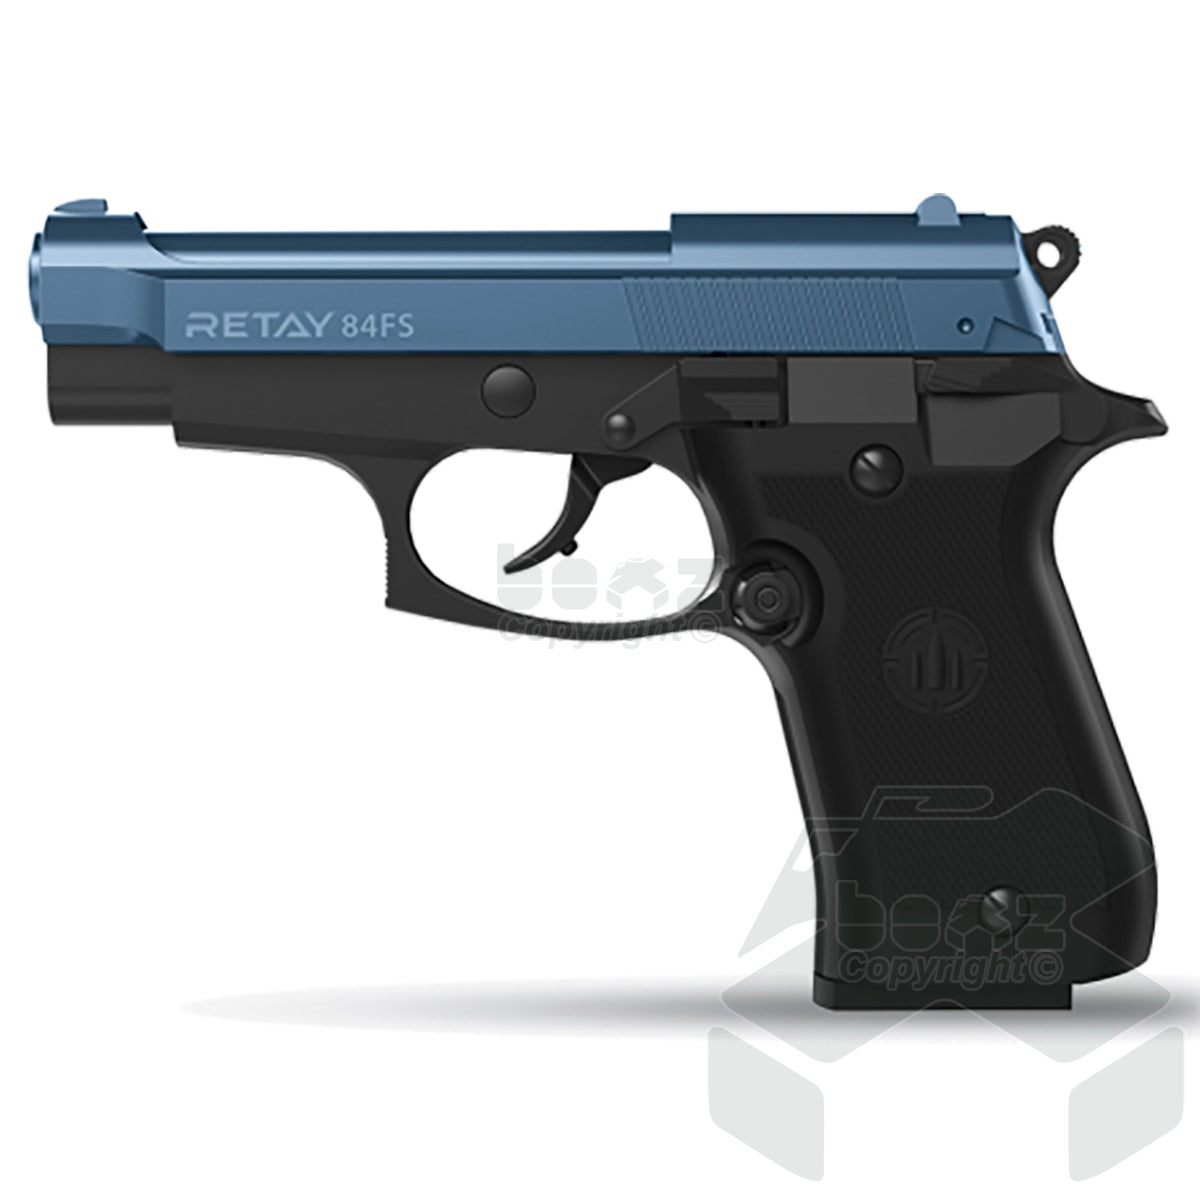 Retay 84 FS Blank Firing Pistol - 9mm  - Black